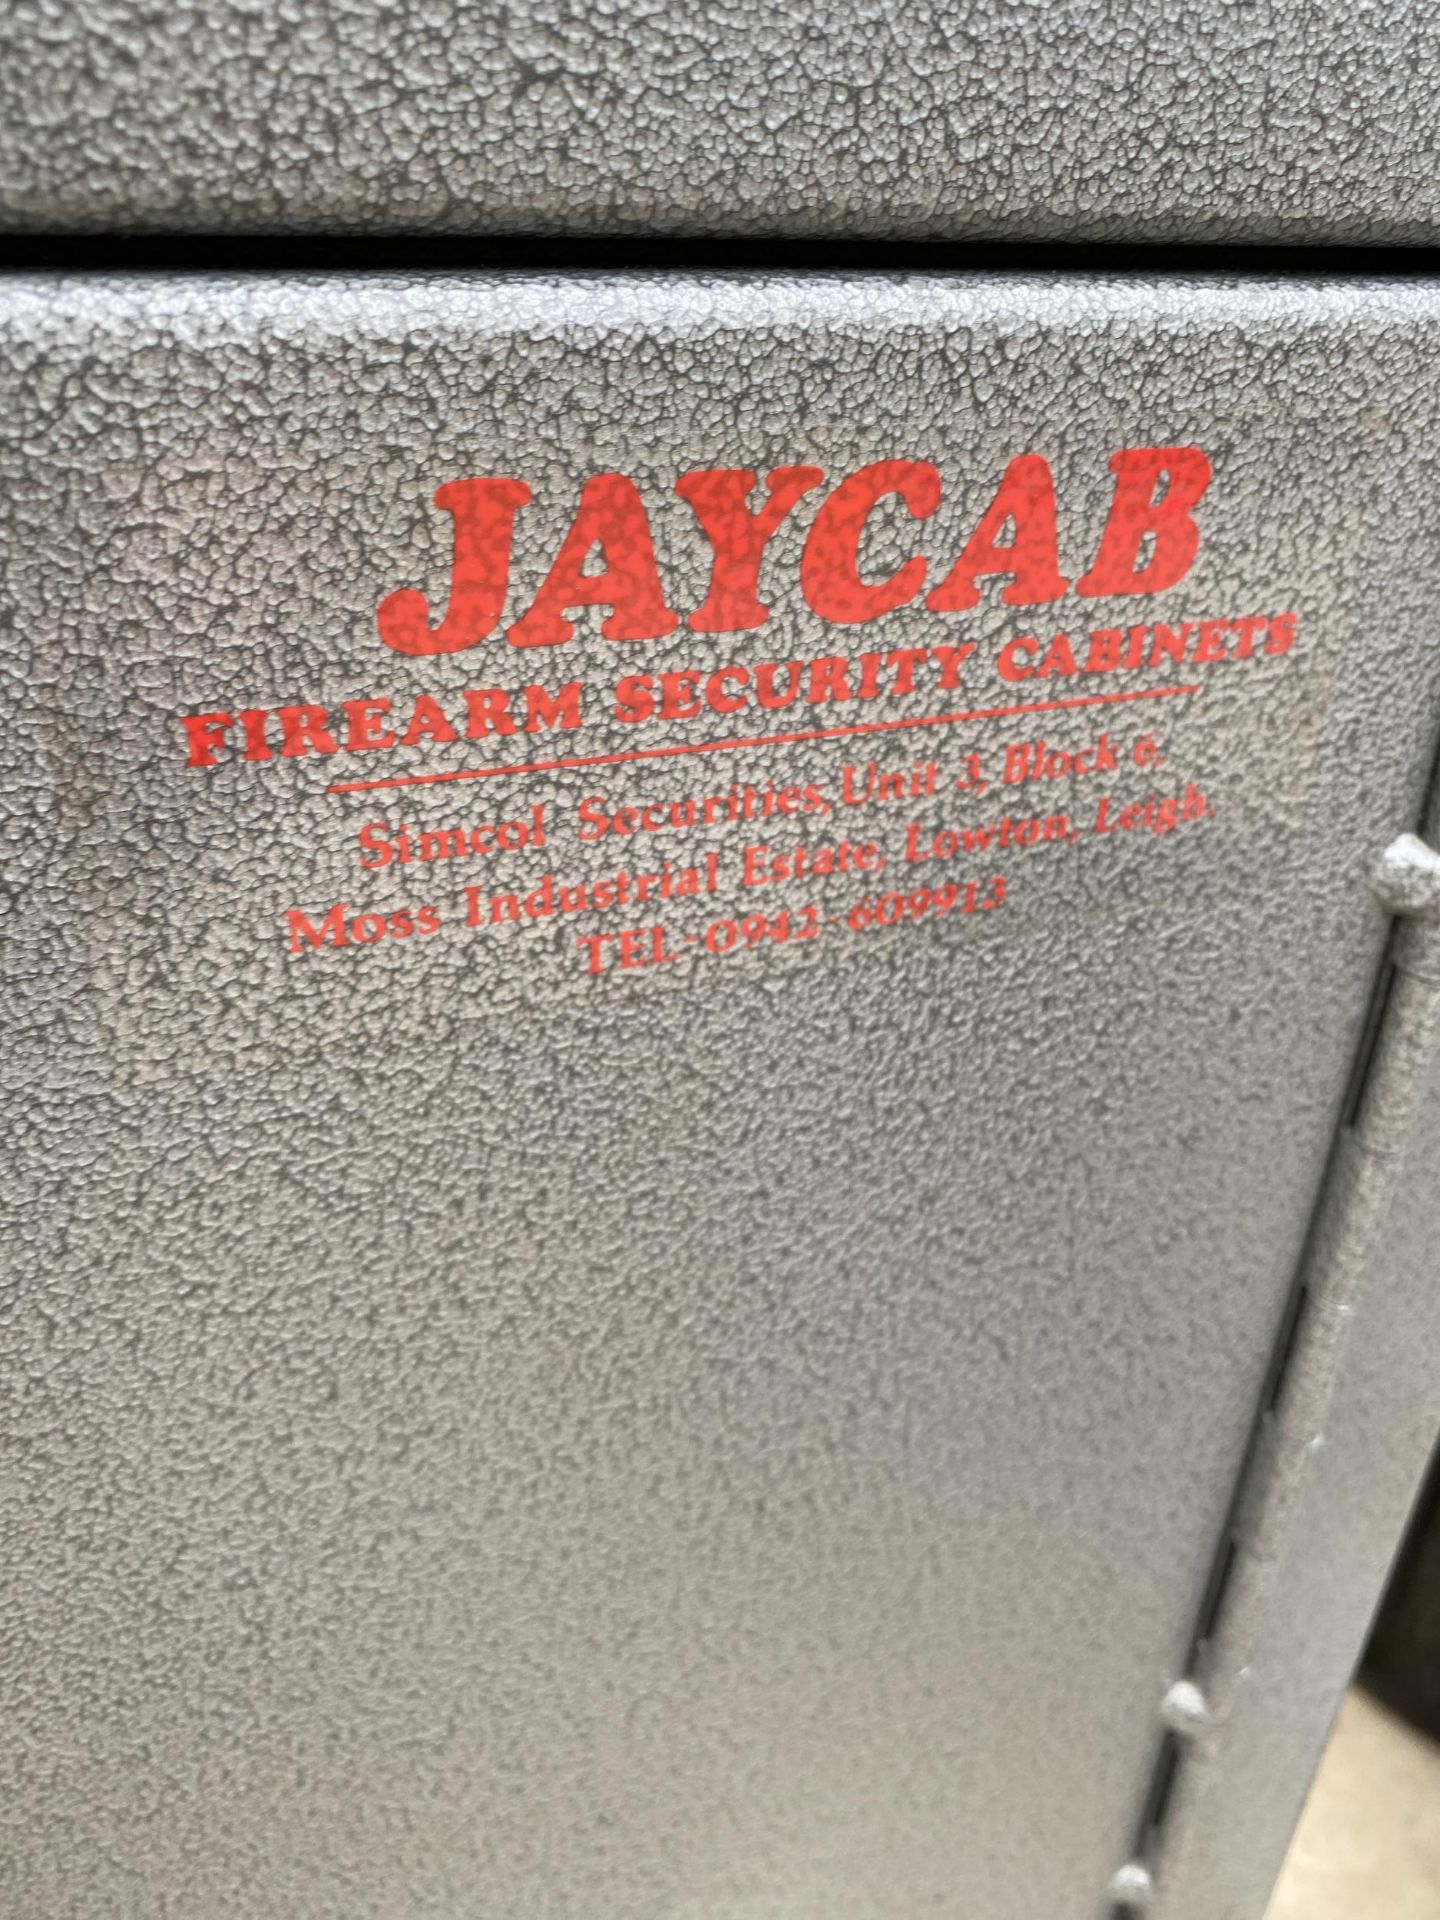 A METAL JAYCAB LOCKING BOX (NO KEY) - Image 2 of 2